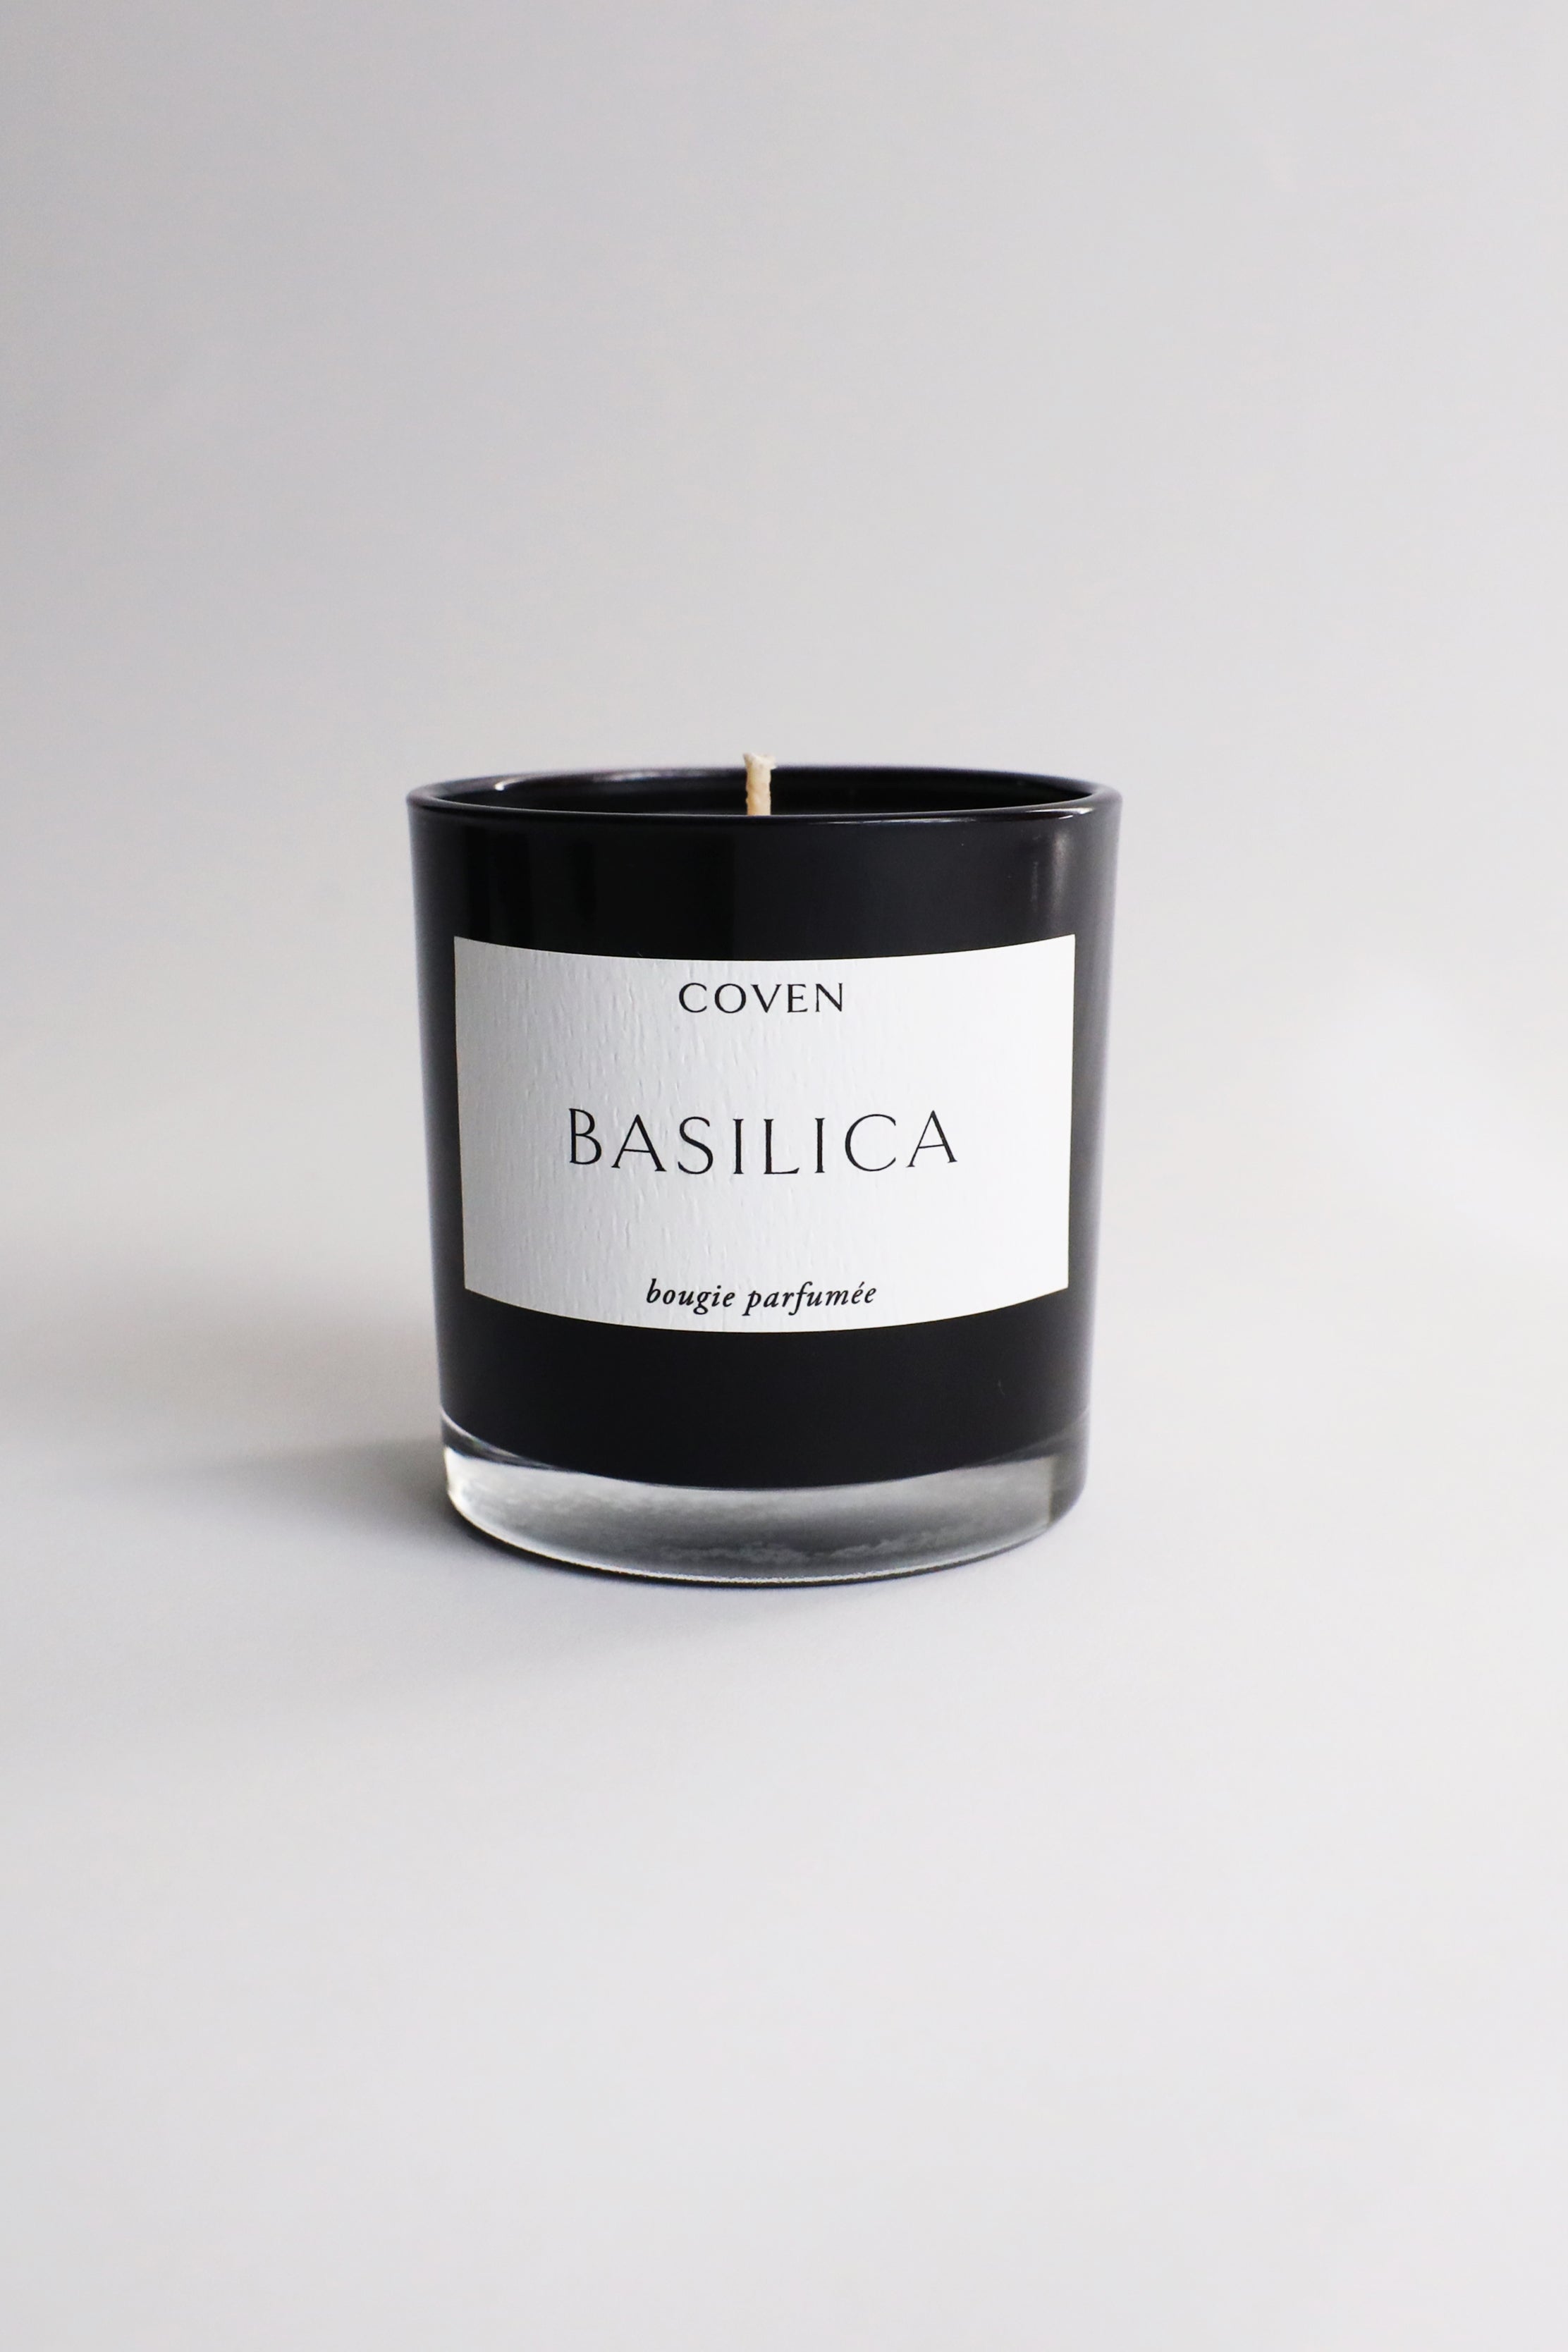 Coven Basilica Candle - Golden Oud Incense – Aquelarre Shop